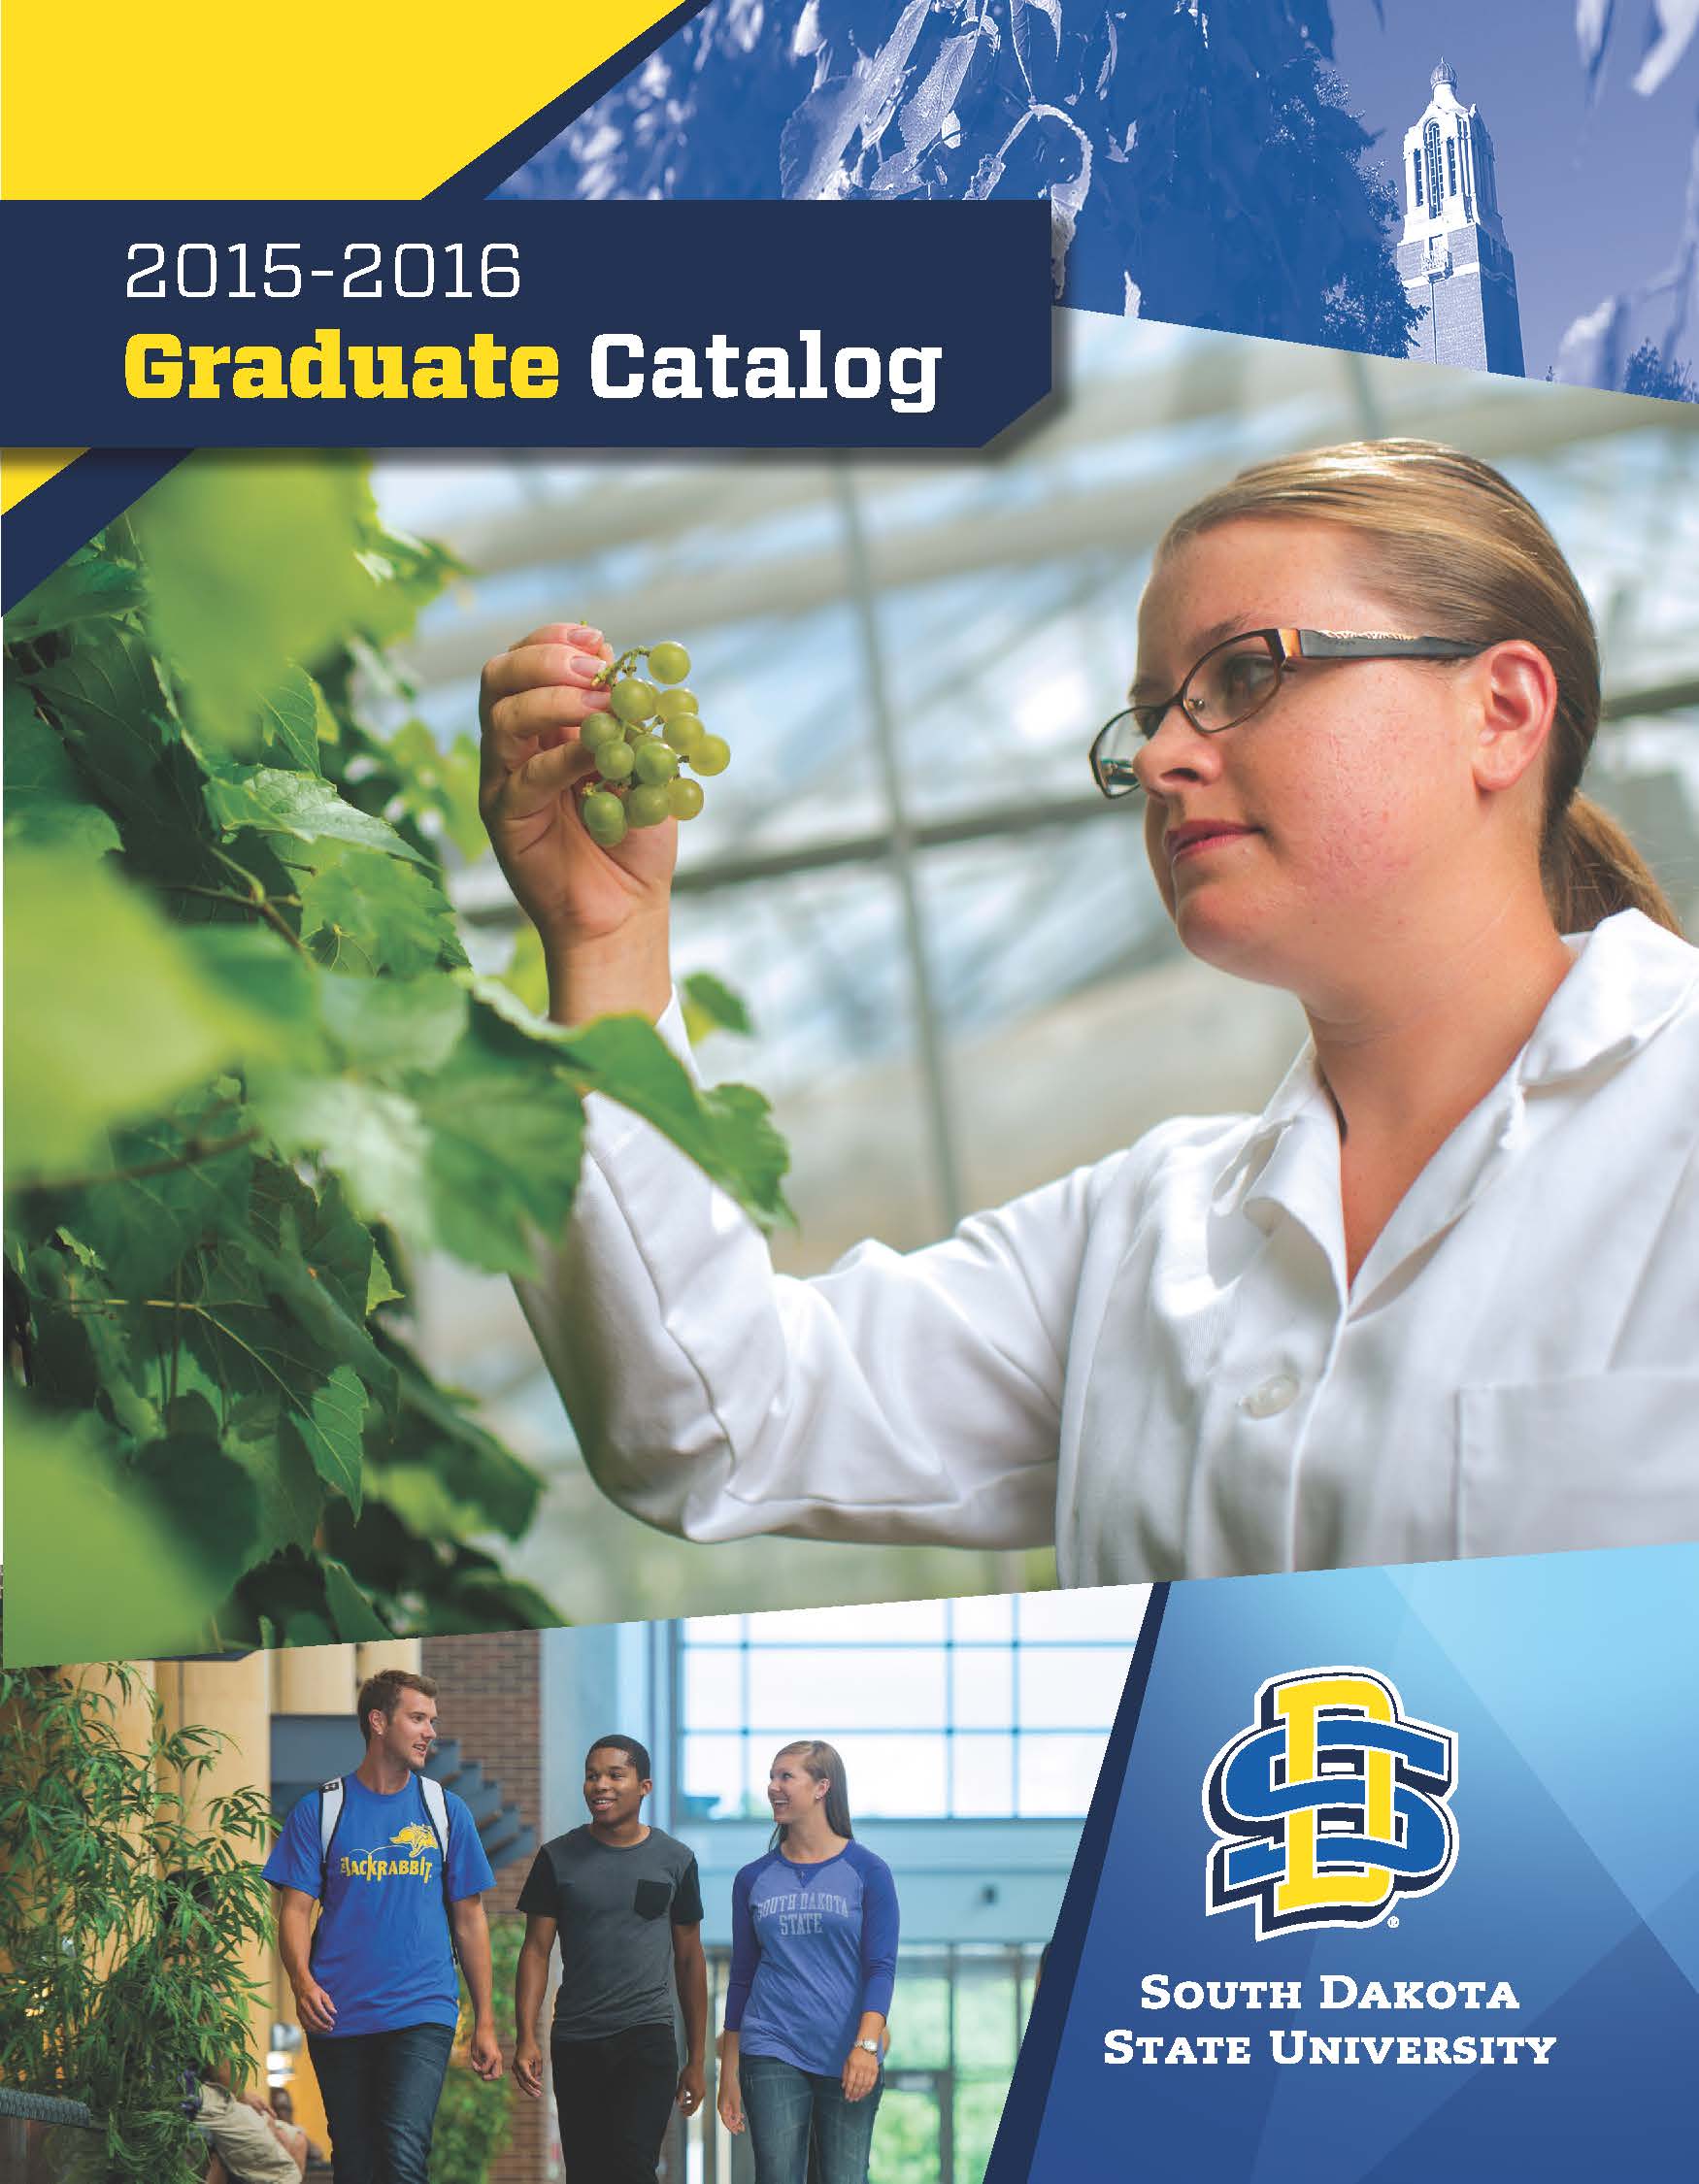 2015-2016 Graduate Catalog cover